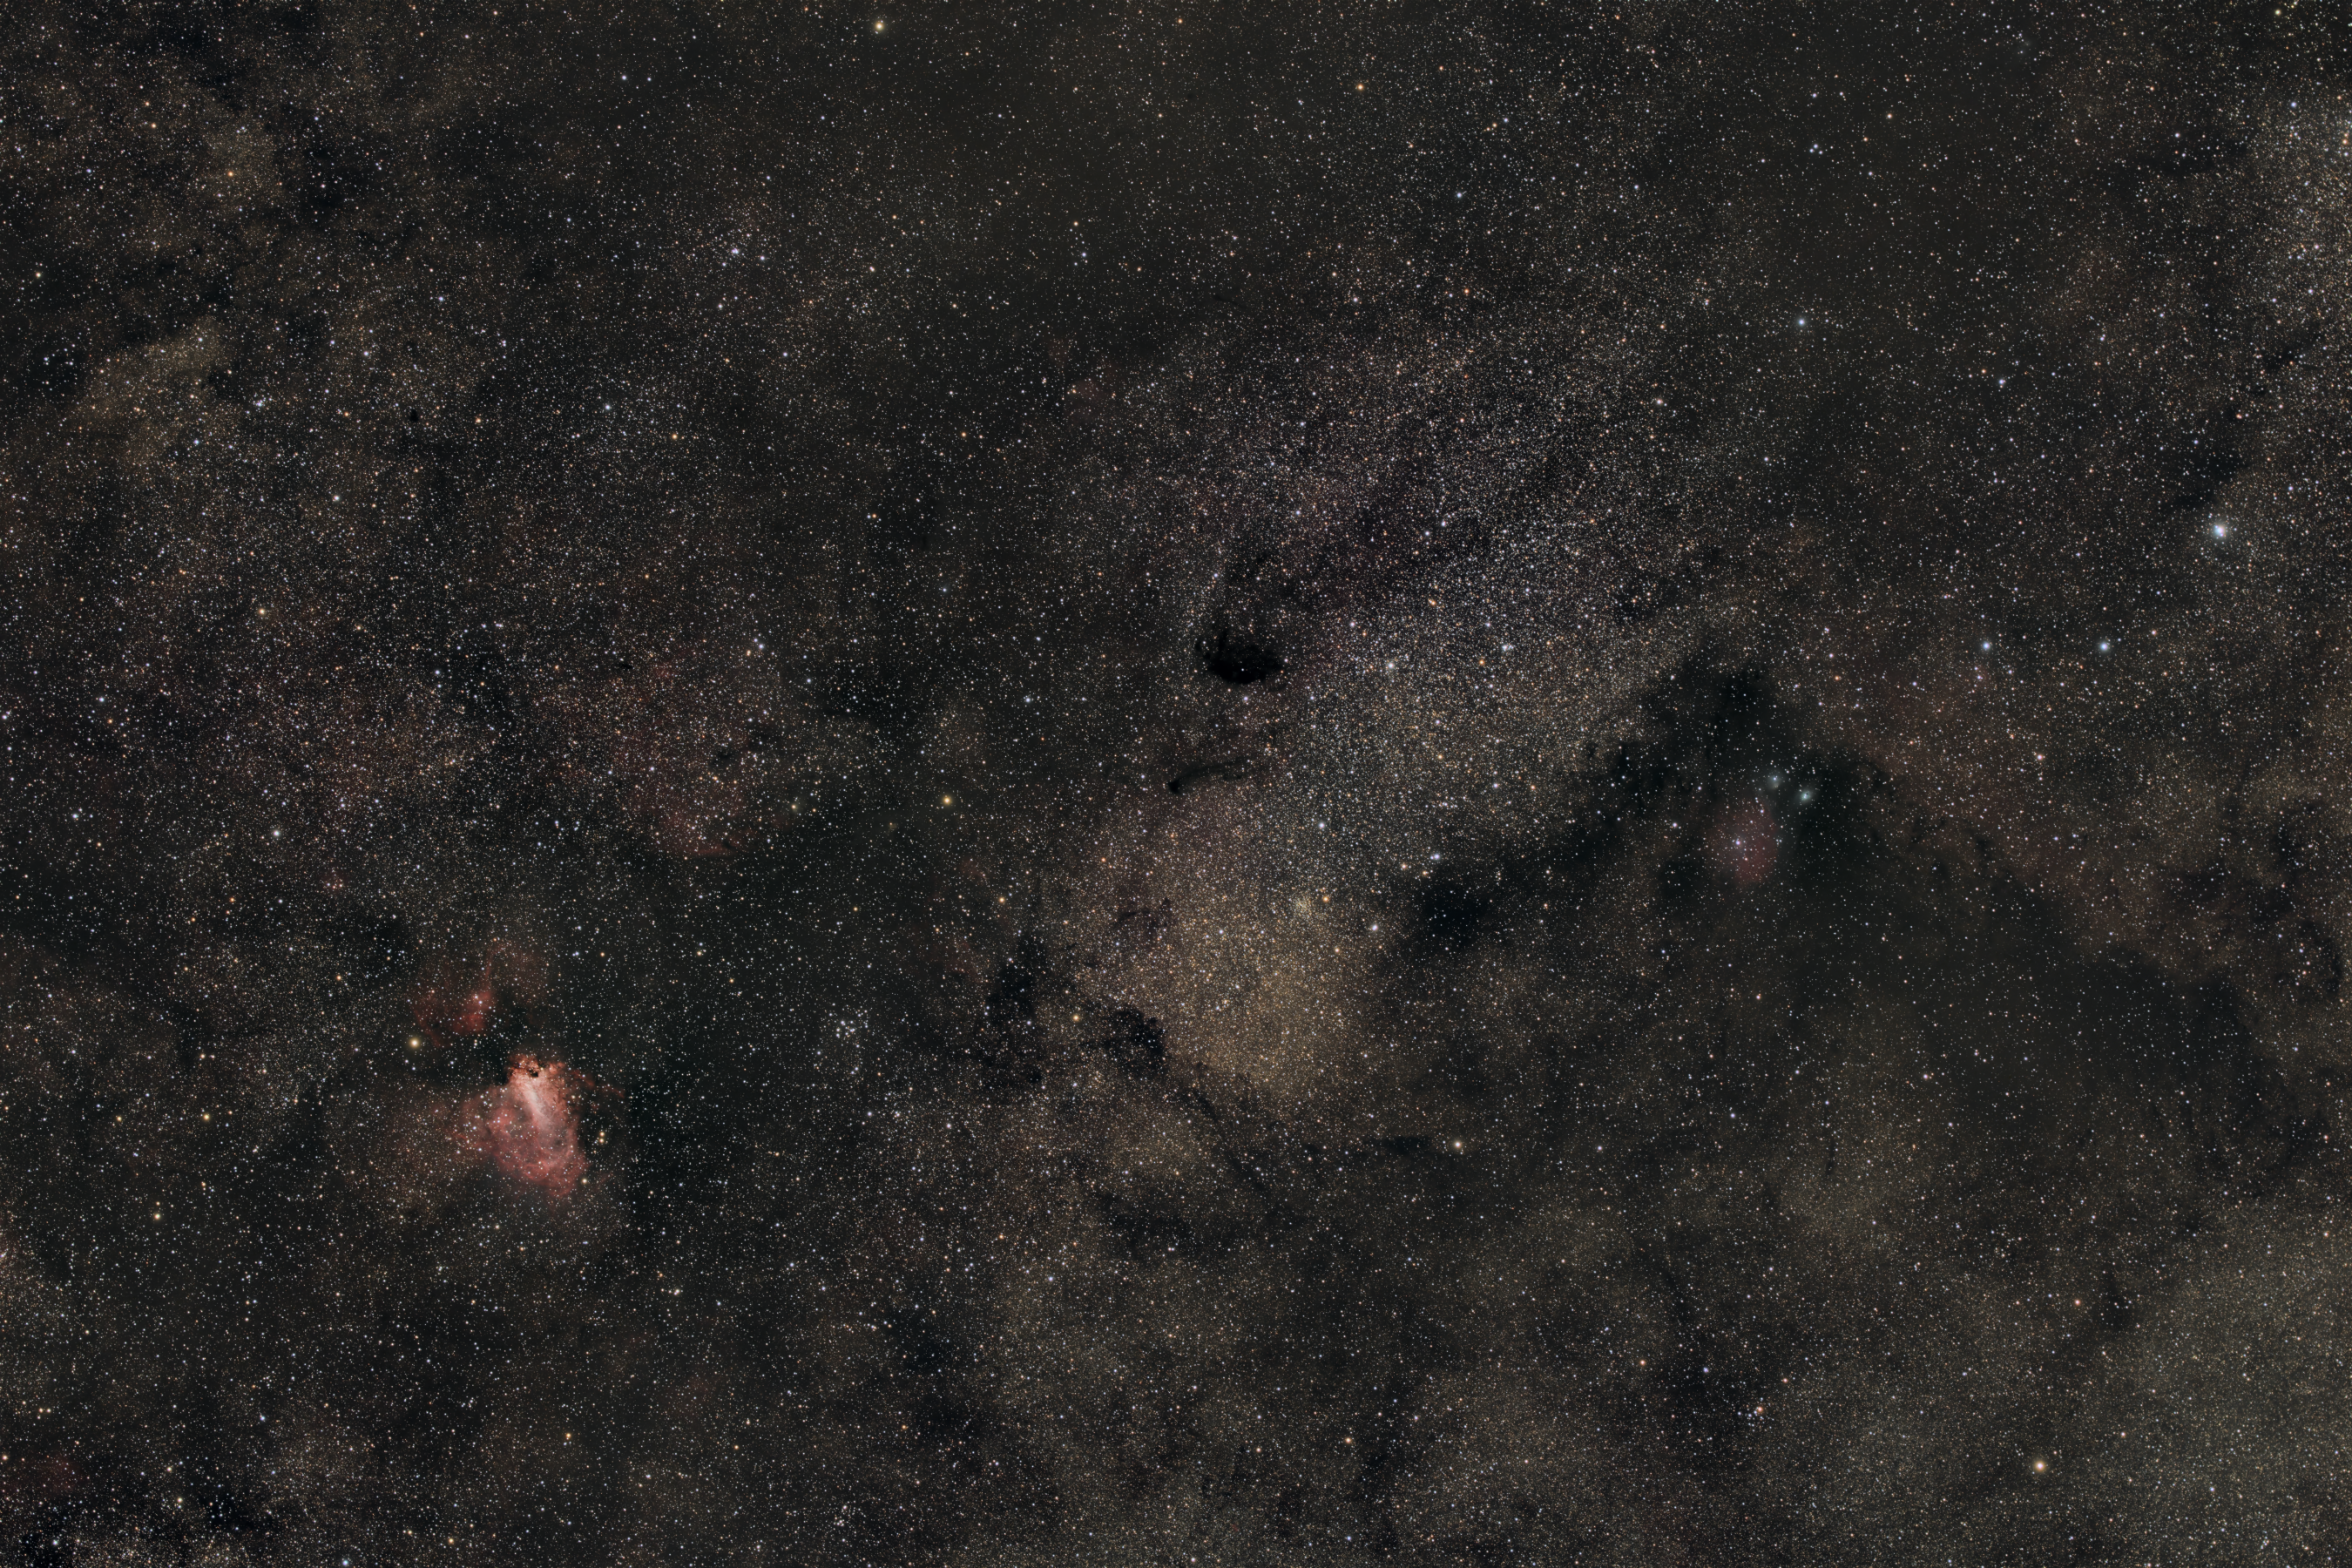 M17, M18, and M24 in Sagittarius